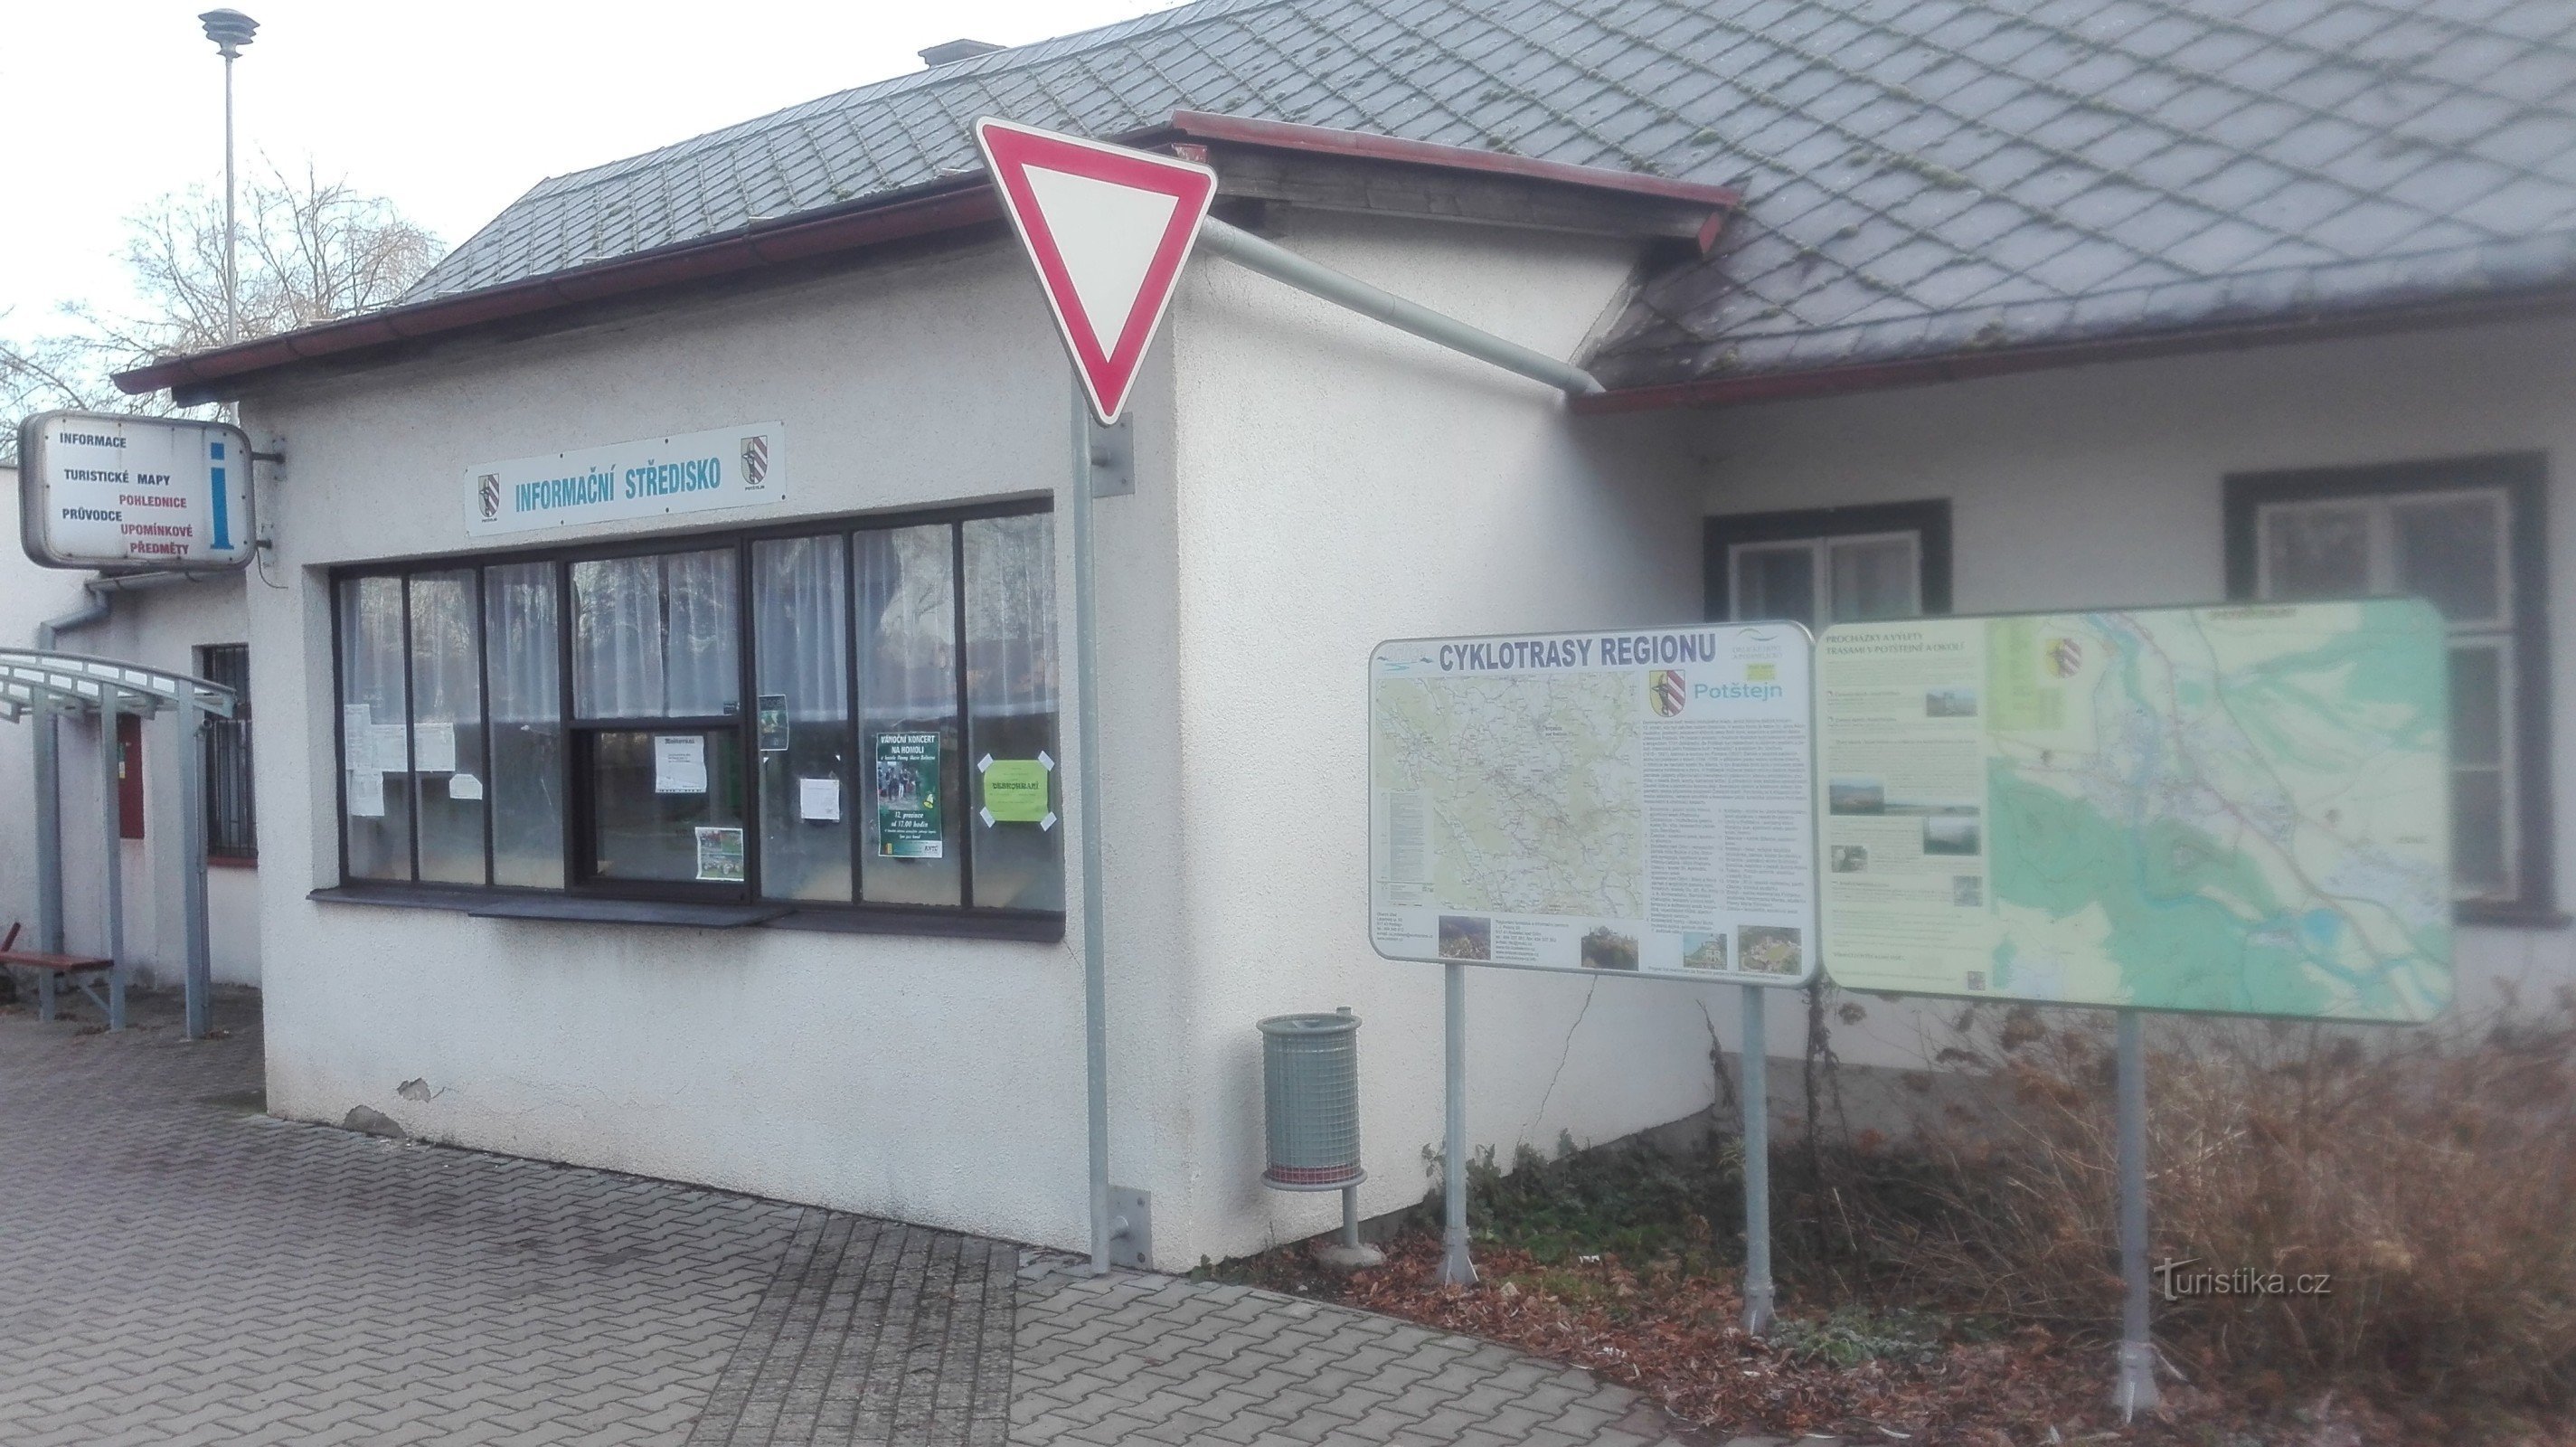 Potštejn - centro de informações